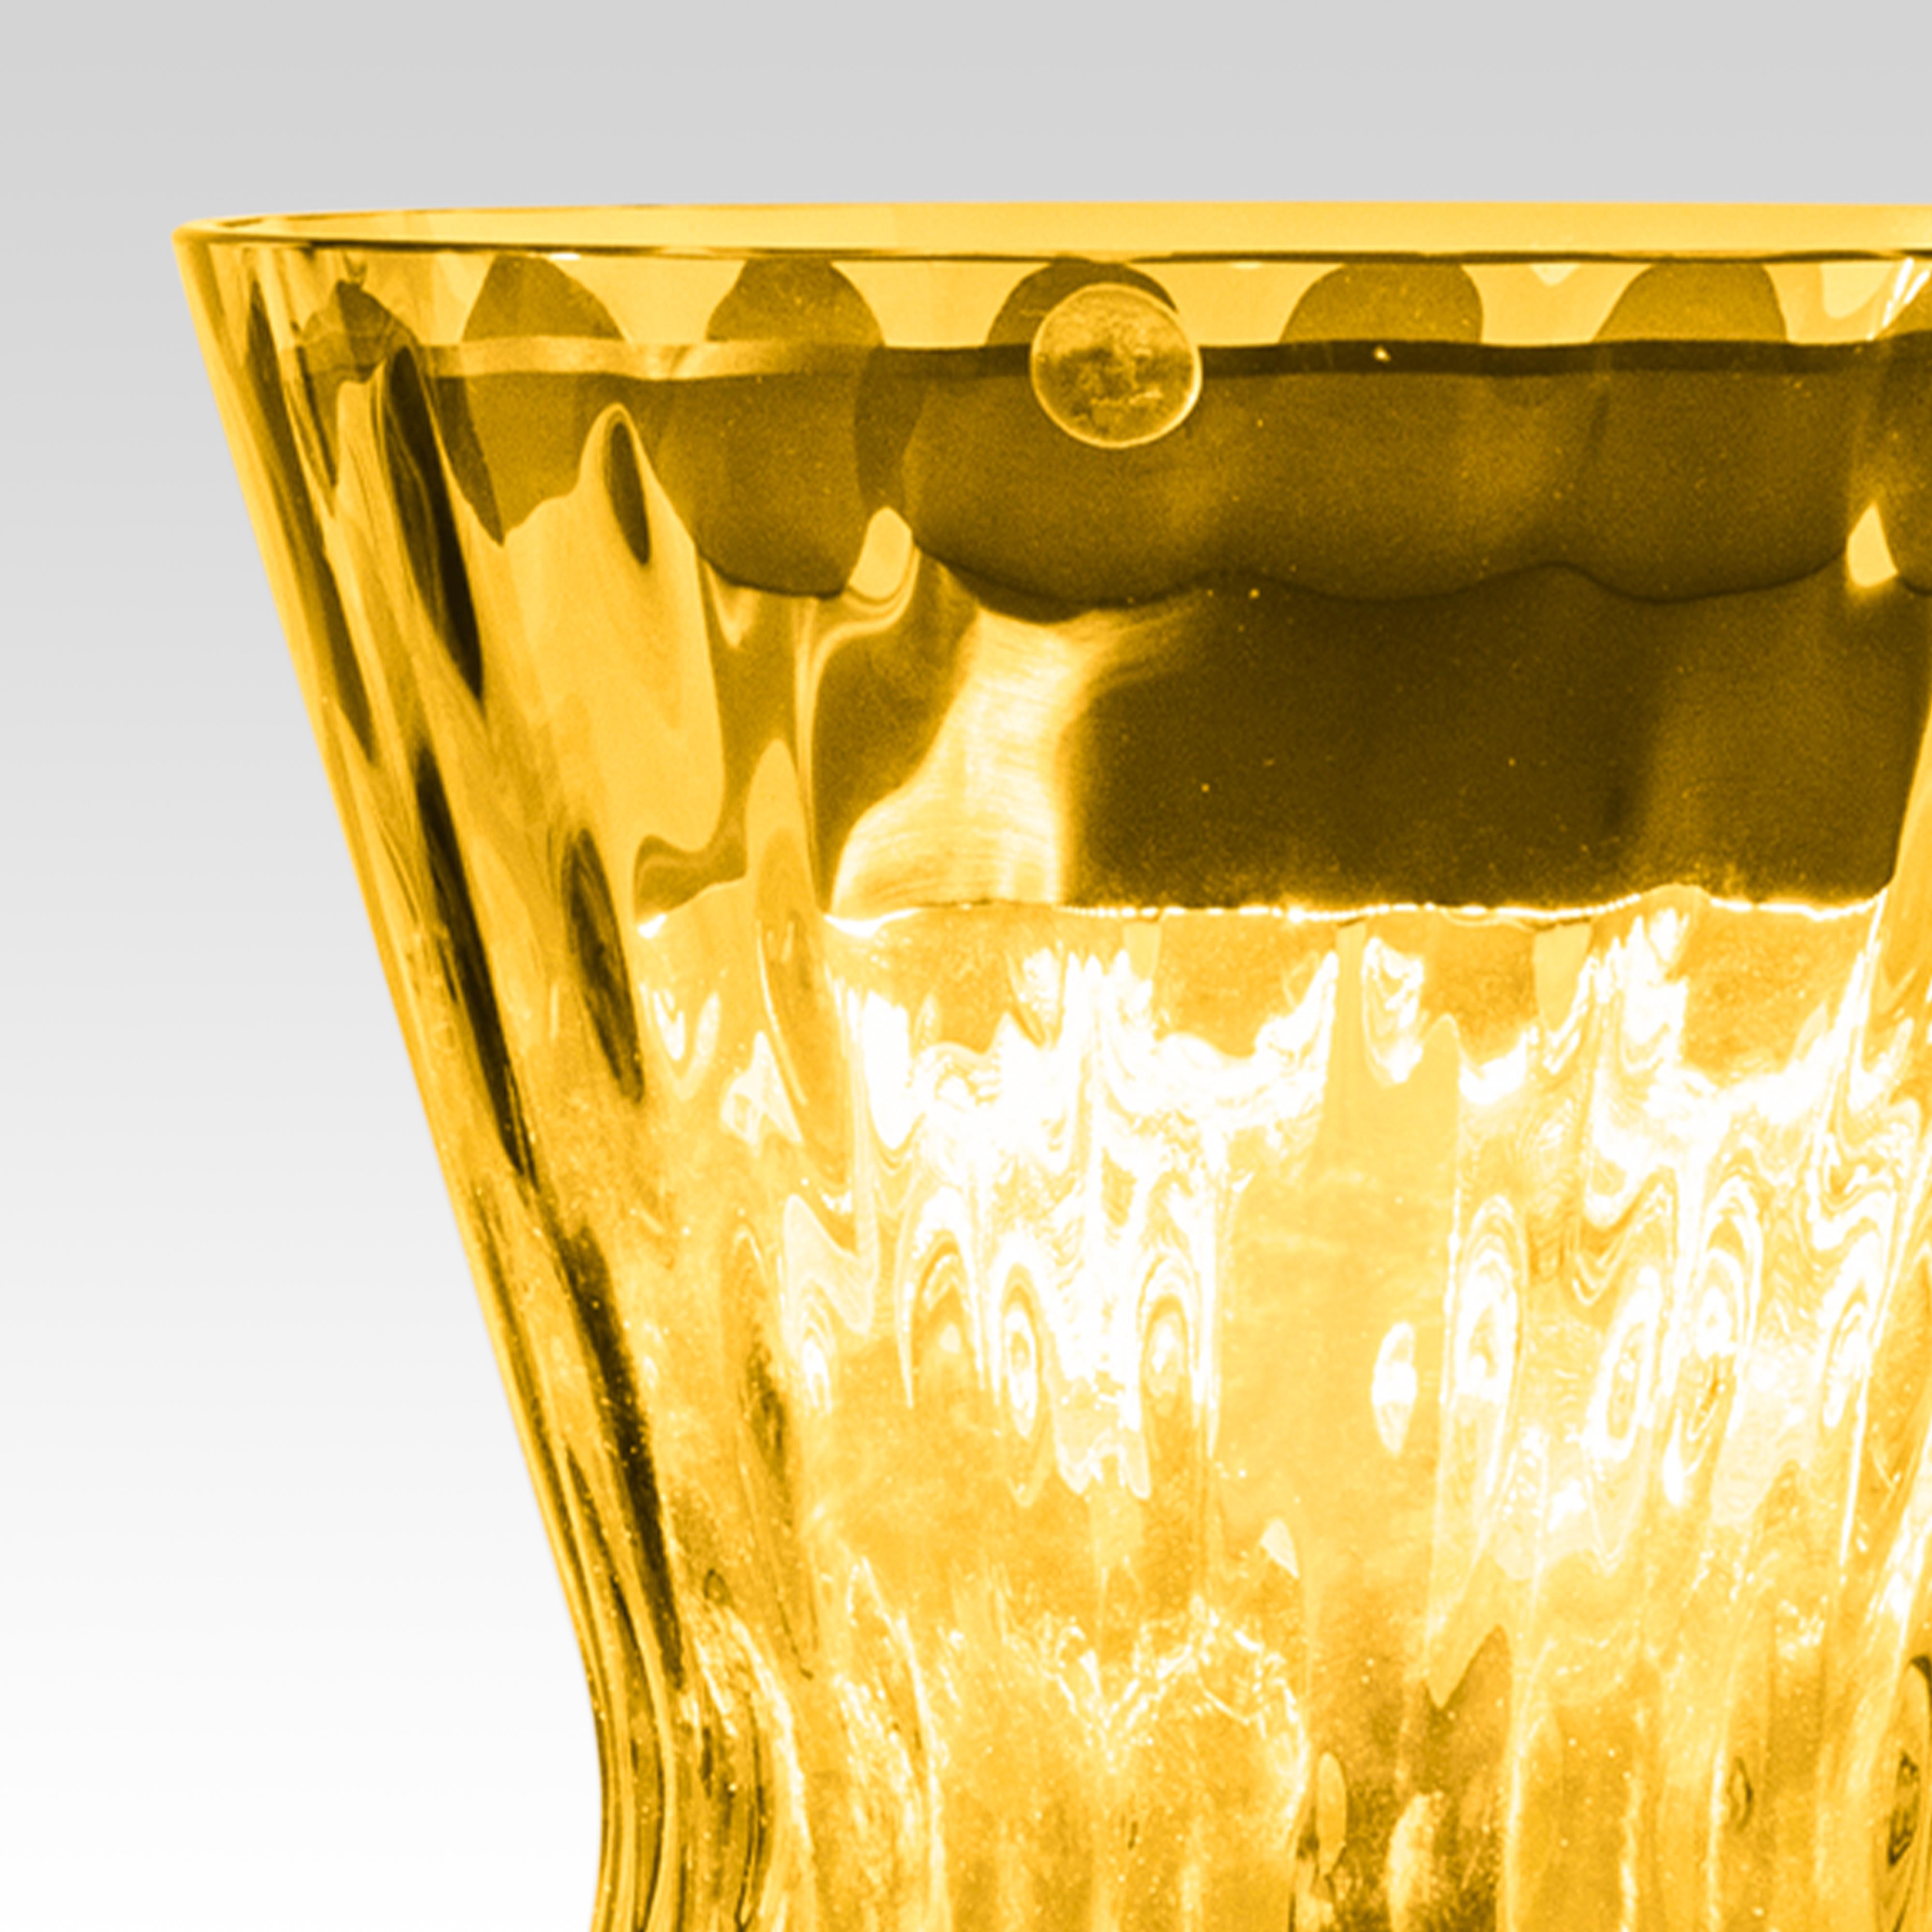 Tiara Luce, lampe de table conçue en 2018 par le designer Francesco Lucchese.
Elle a été entièrement repensée en utilisant les derniers développements de la technologie de l'éclairage tout en conservant intact le design original, qui incarne le